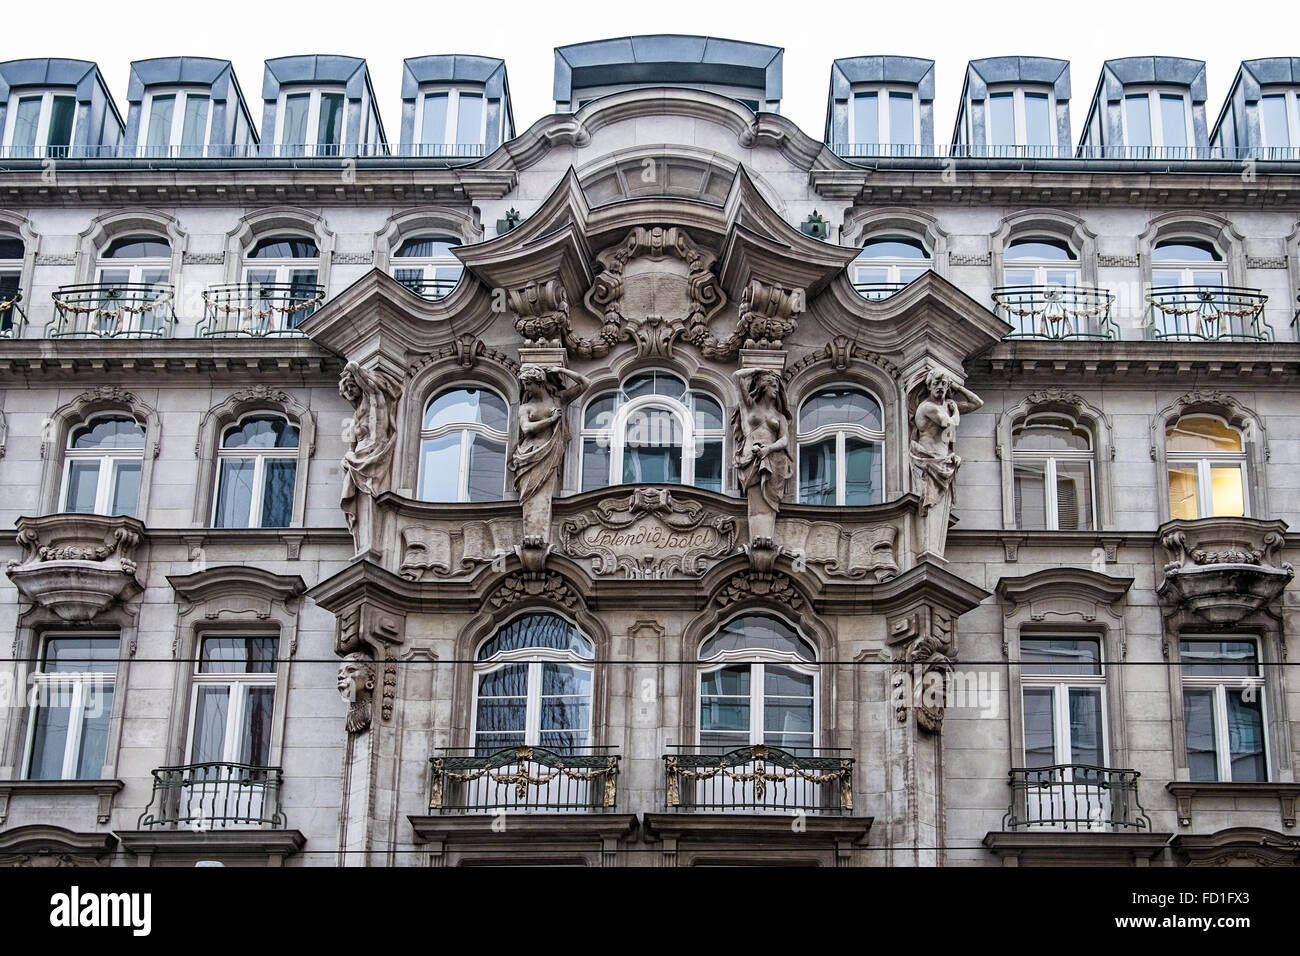 Berlino Hotel Splendid esterno.Lo studio di architettura Gronau & Graul costruito la casa nel 1904 in stile neo-barocco Foto Stock